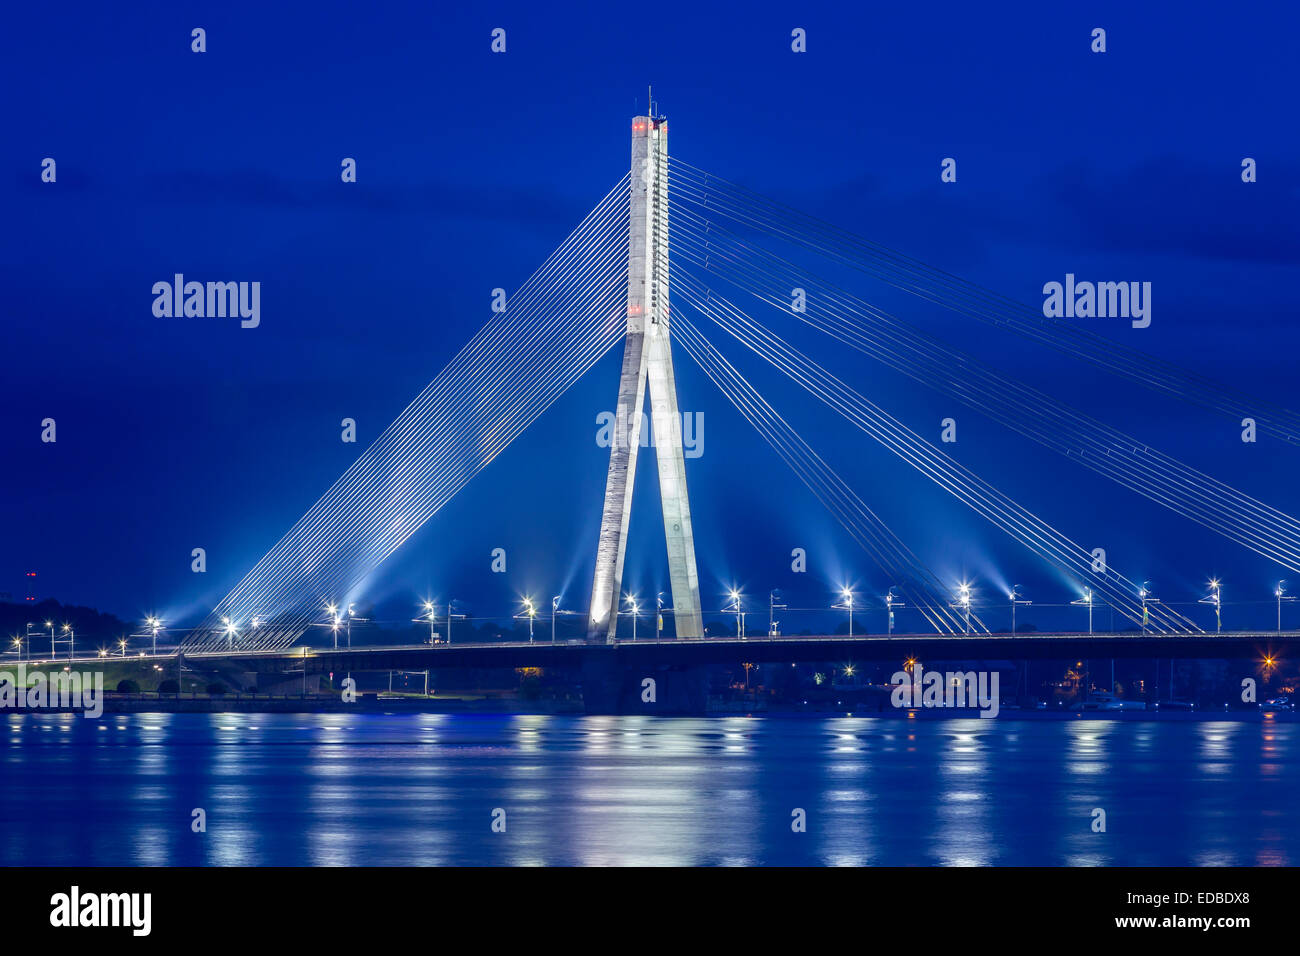 Pont Vanšu, pont à haubans, crépuscule, l'heure bleue, sur la Daugava ou Dvina occidentale, Riga, Lettonie Banque D'Images